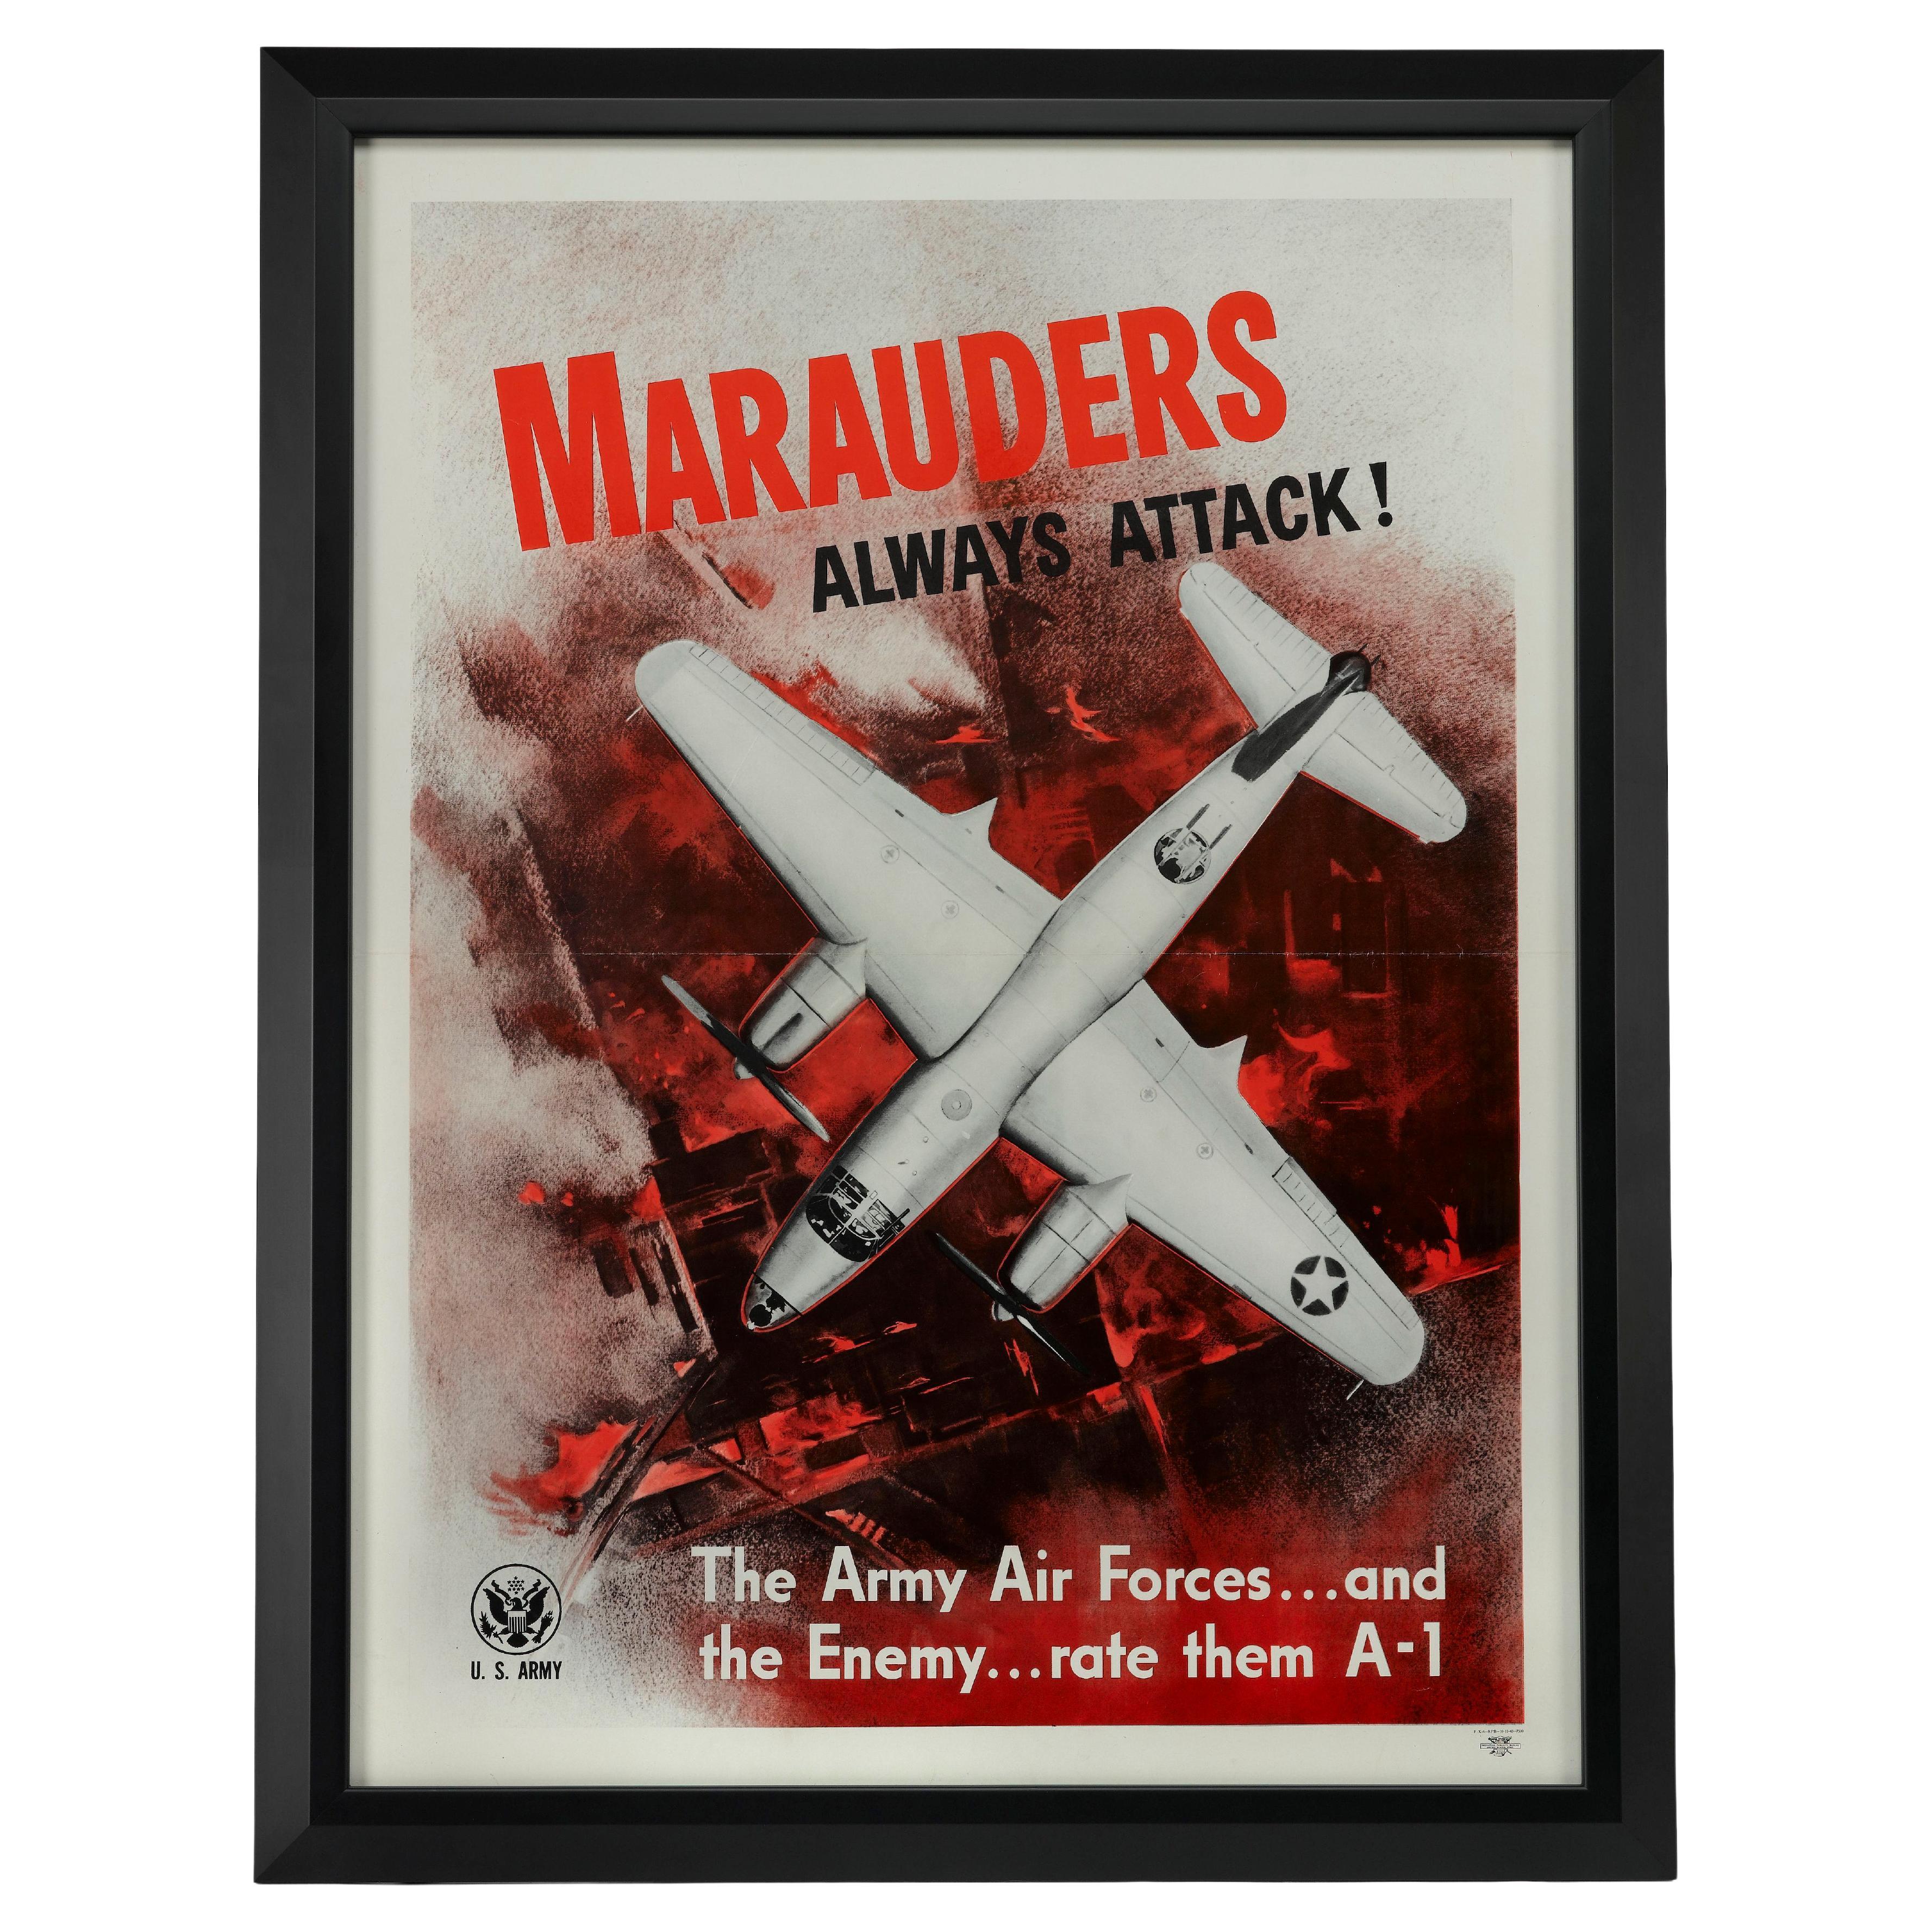 « Les maréchals attaquent toujours ! » Affiche vintage de l'armée de l'air de la Seconde Guerre mondiale, 1943